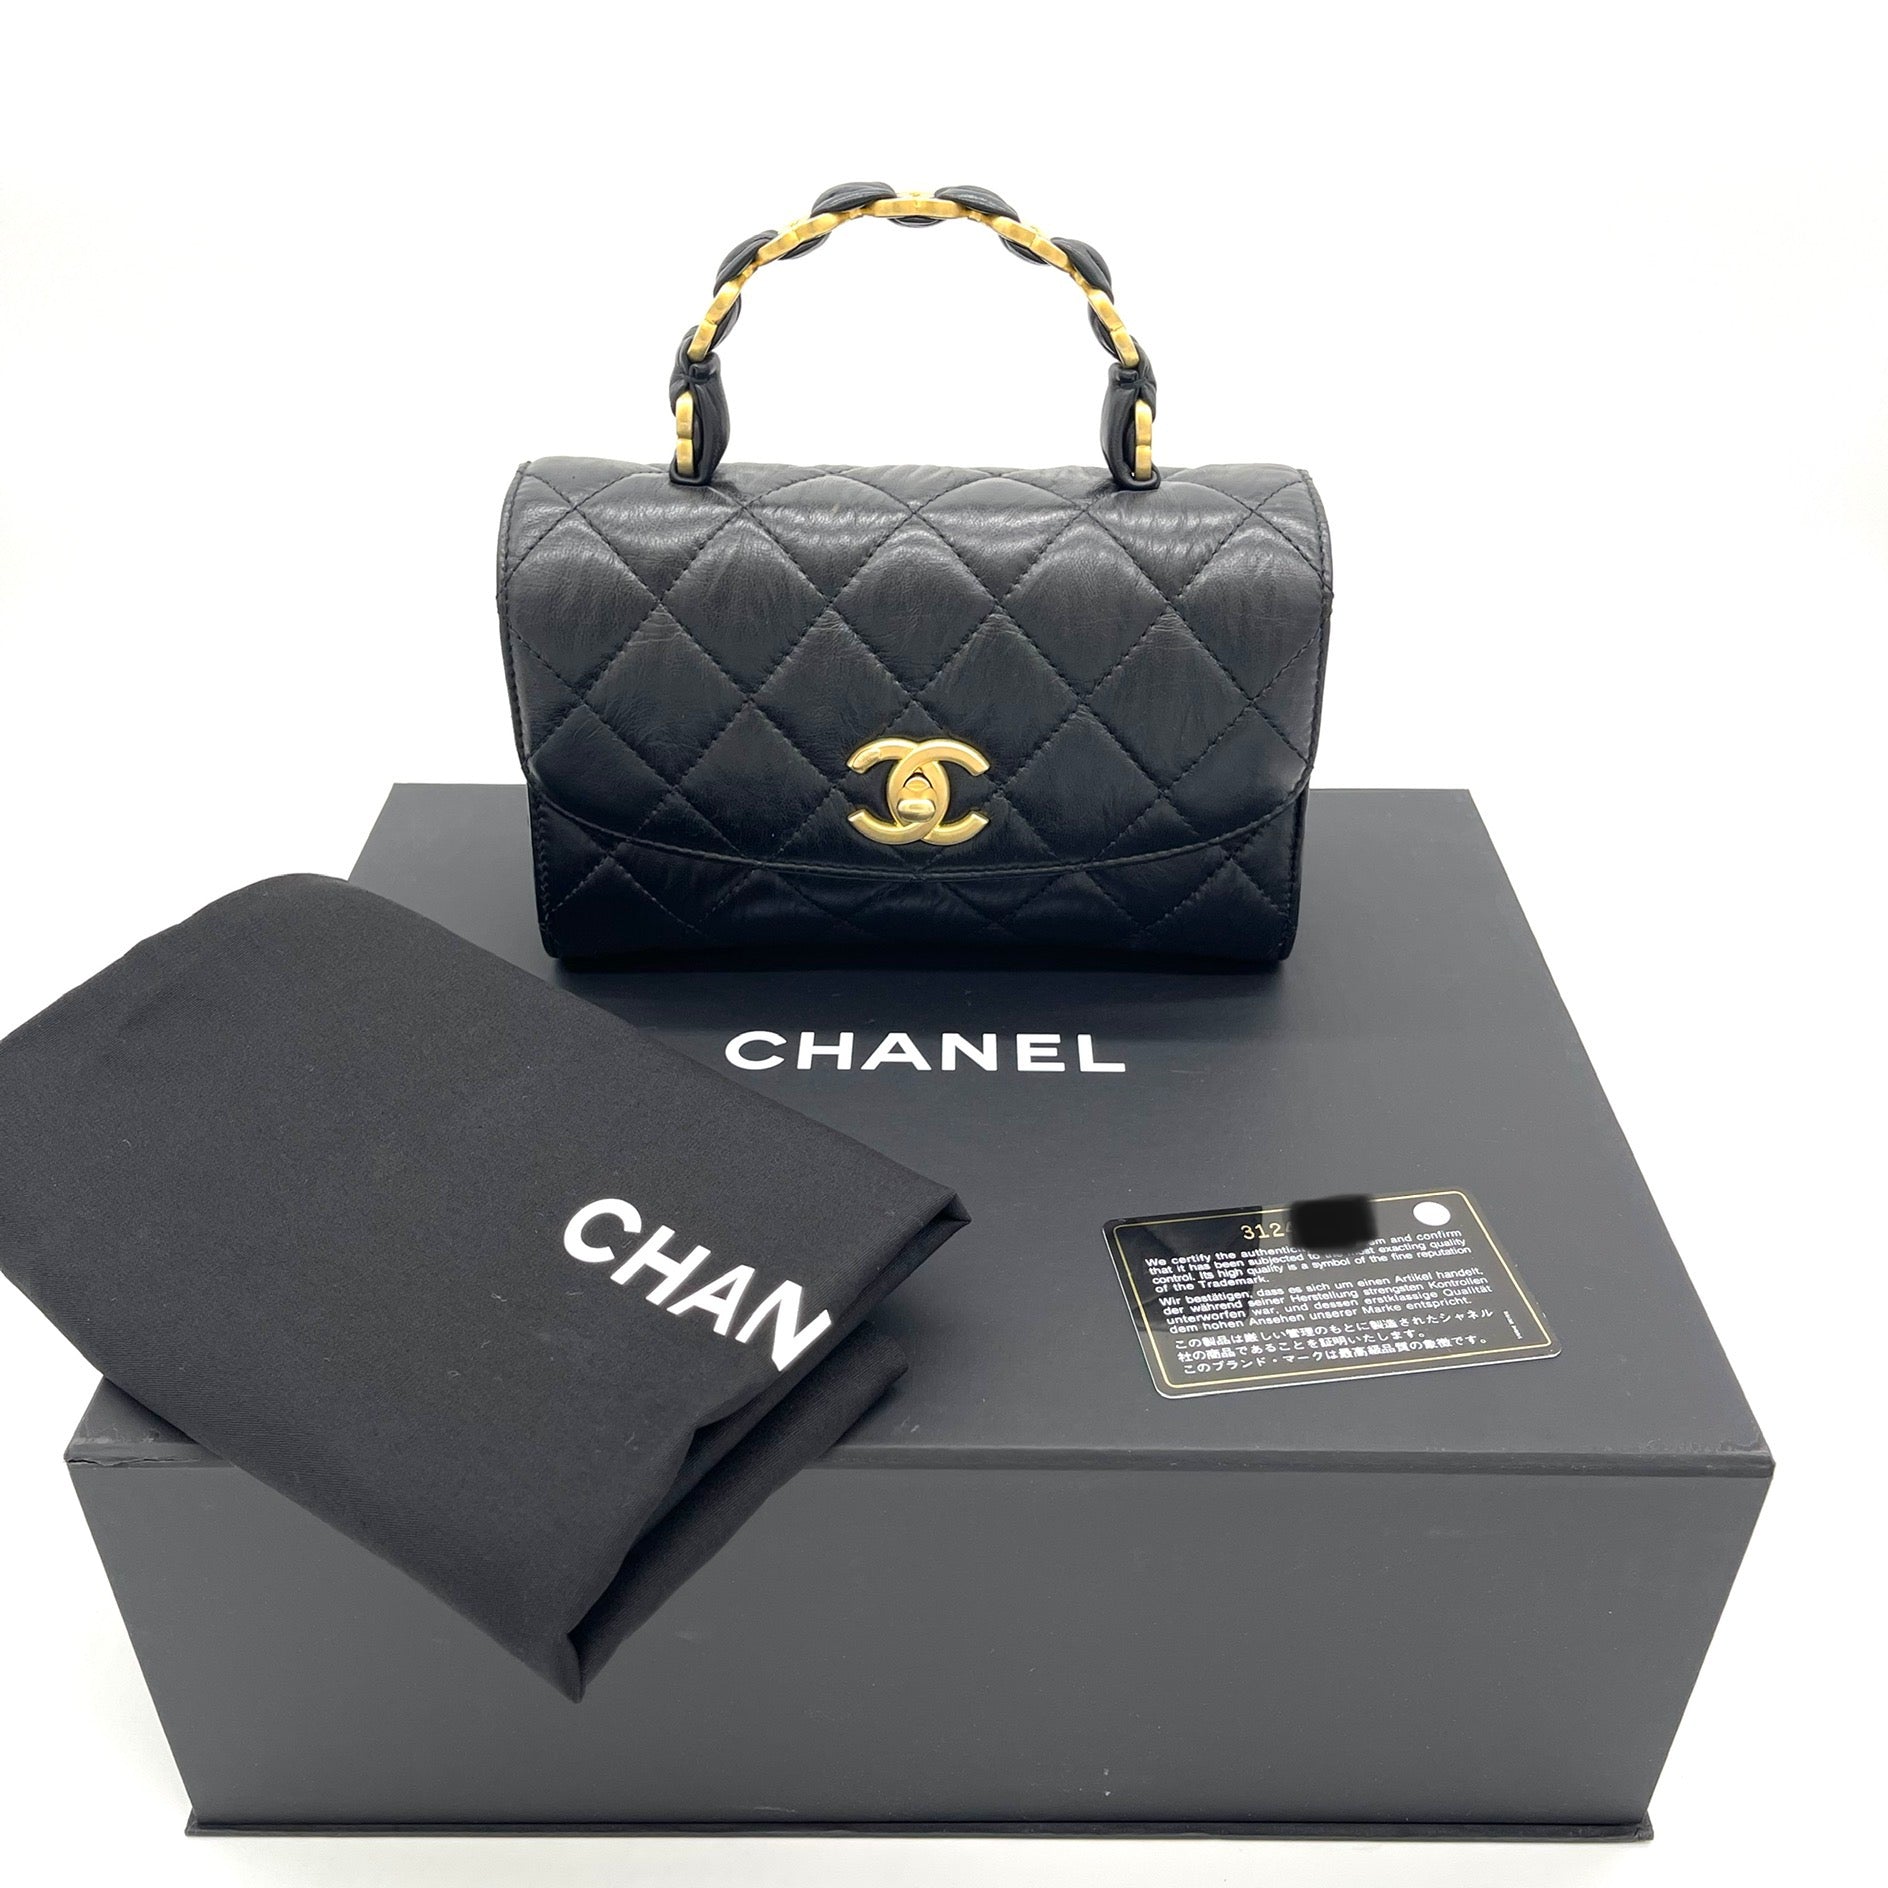 Chanel Black Python Medium Coco Top Handle Bag Chanel